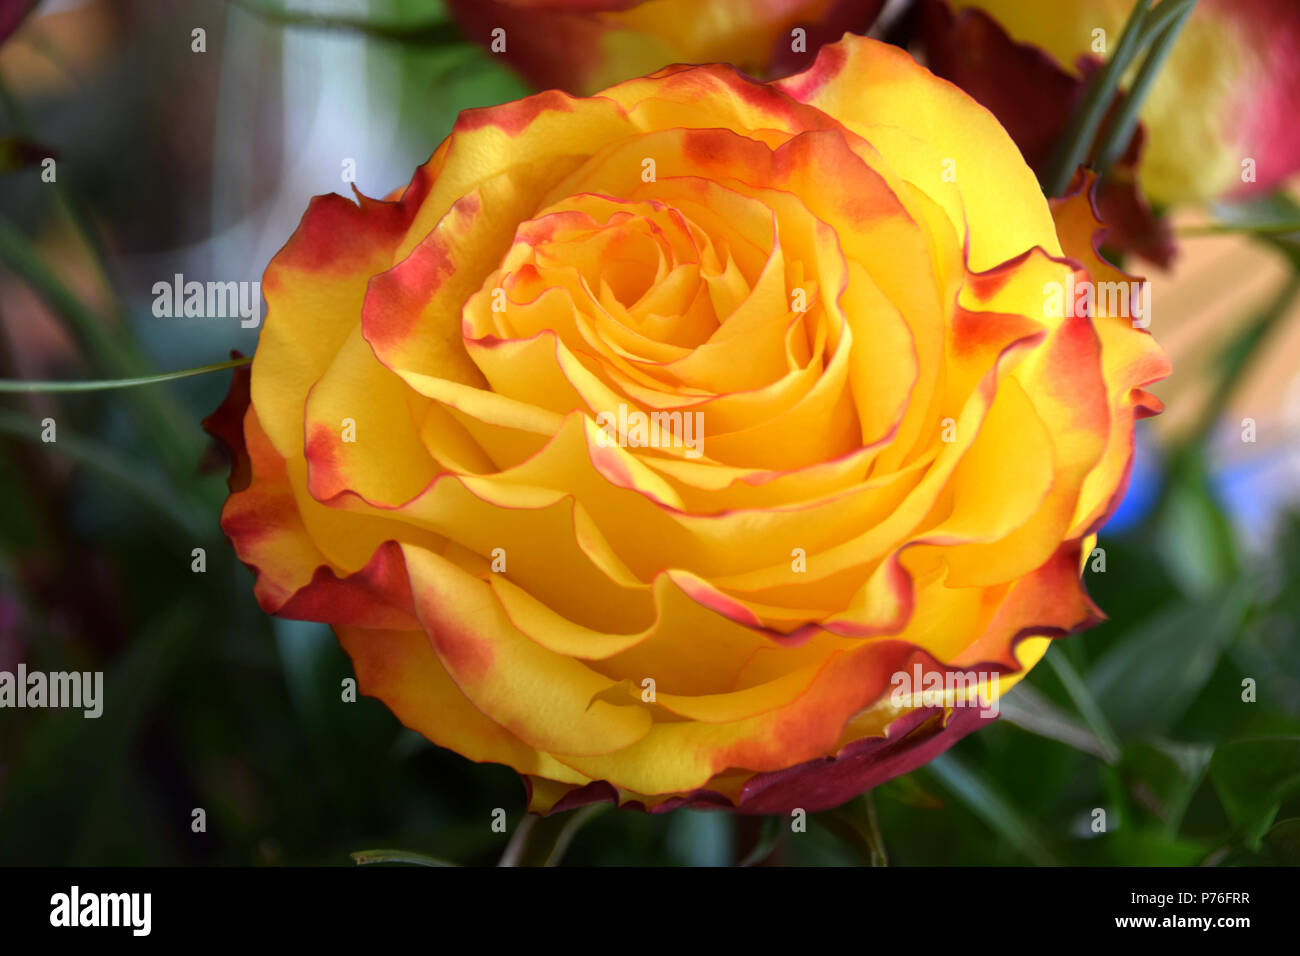 Perfekte Rose als Symbol für die ewige Liebe, gelbe Rose mit rotem Rand auf  Blütenblätter Stockfotografie - Alamy